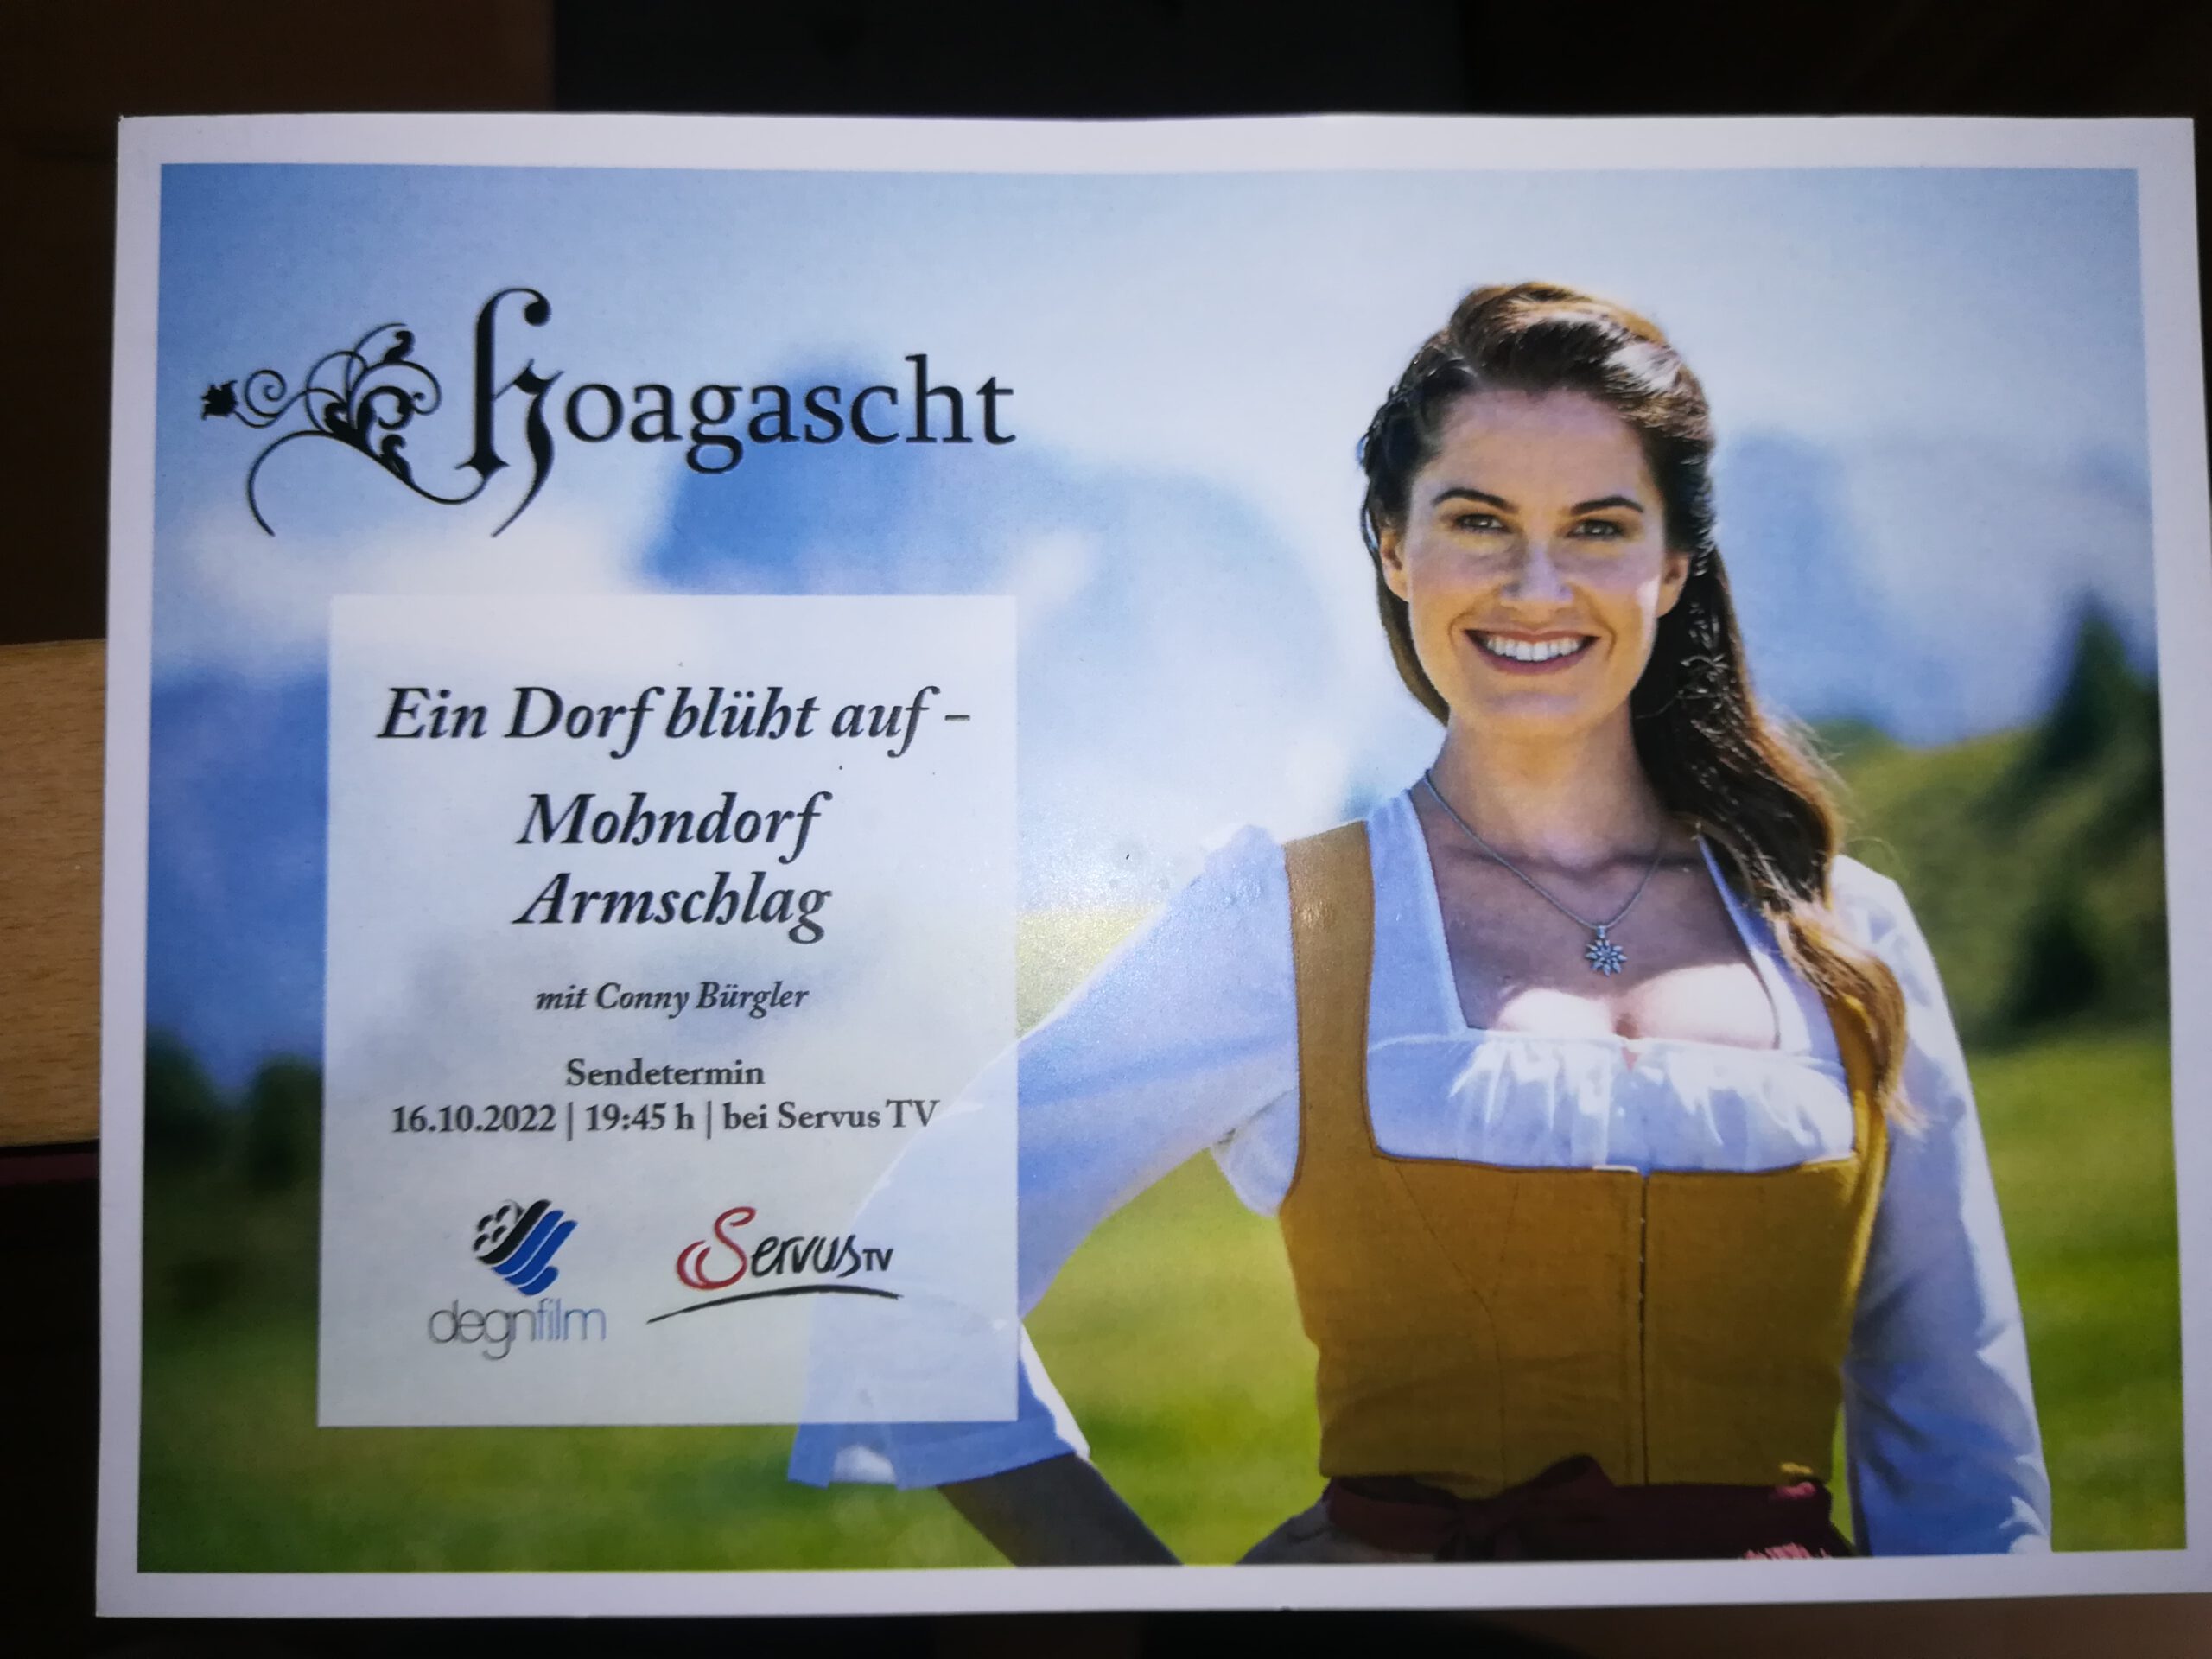 Hoagascht - Ein Dorf blüht auf - bei Servus TV - Mohndorf Armschlag